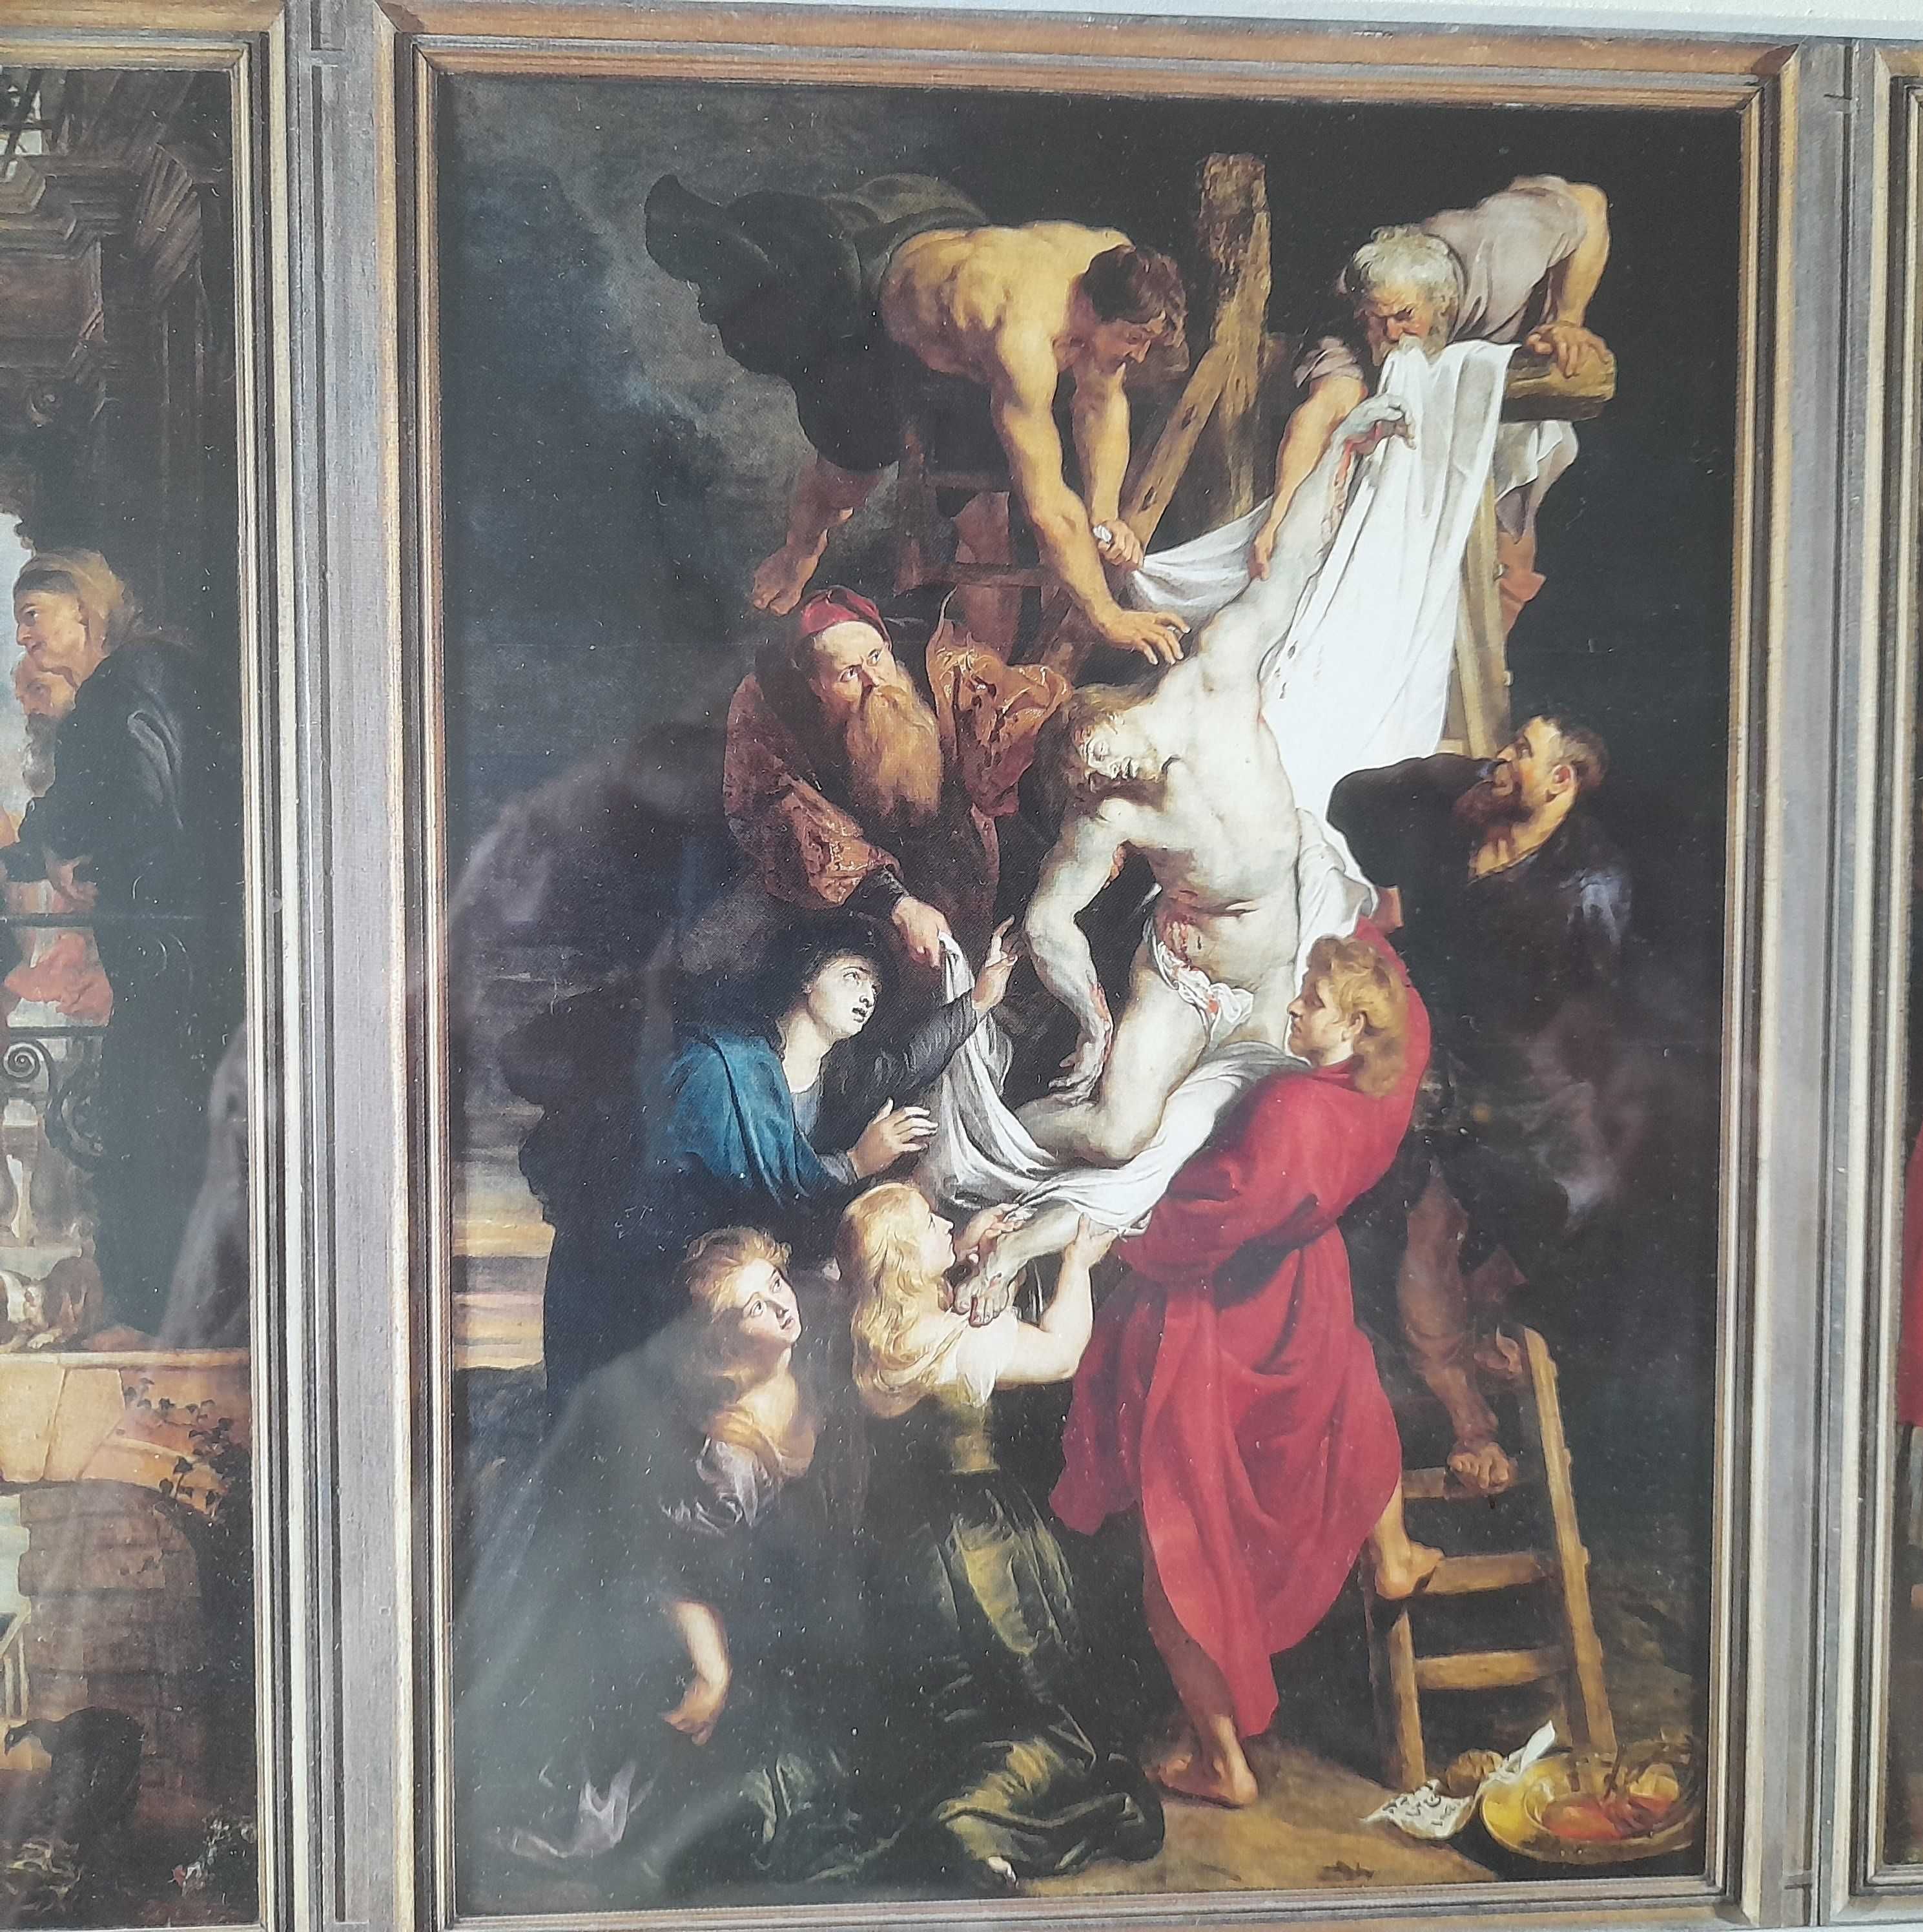 "Zdjęcie z krzyża'" Rubens - reprodukcja